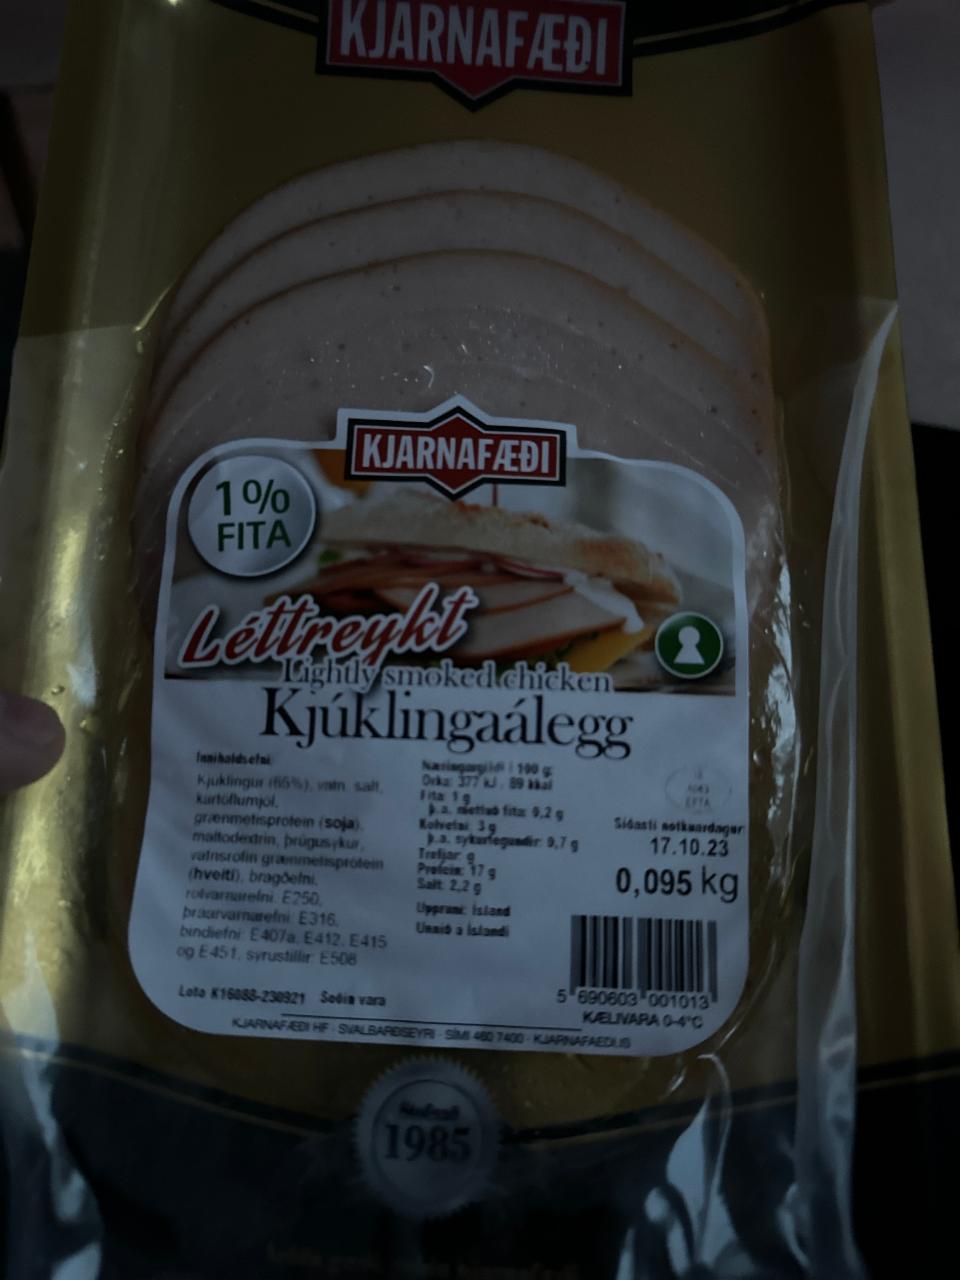 Zdjęcia - Léttreykt Kjúklingaálegg Lightly smoked chicken Kjarnafæði